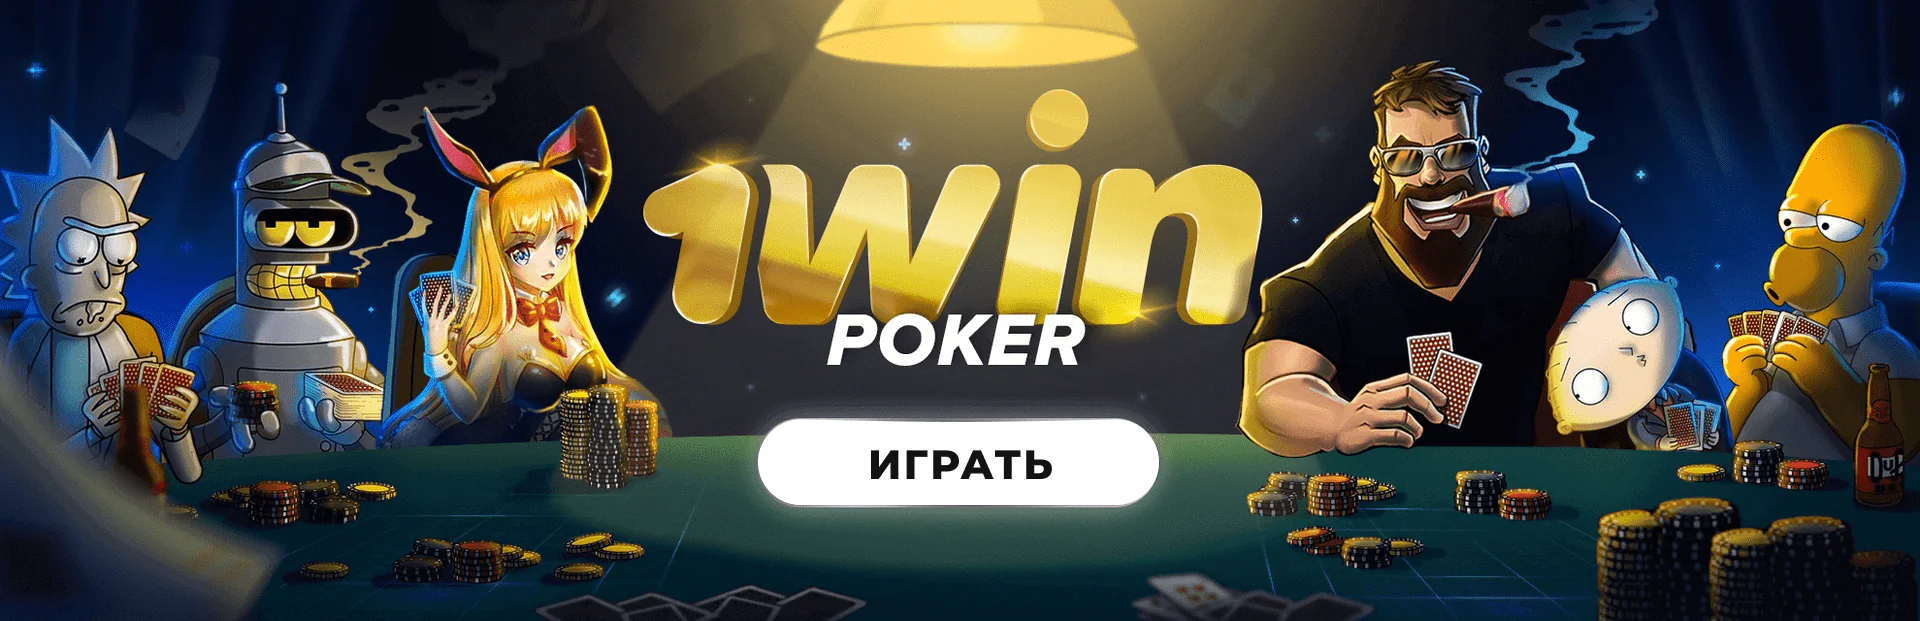 Hacksaw производитель игр в казино 1вин Украина 🏆